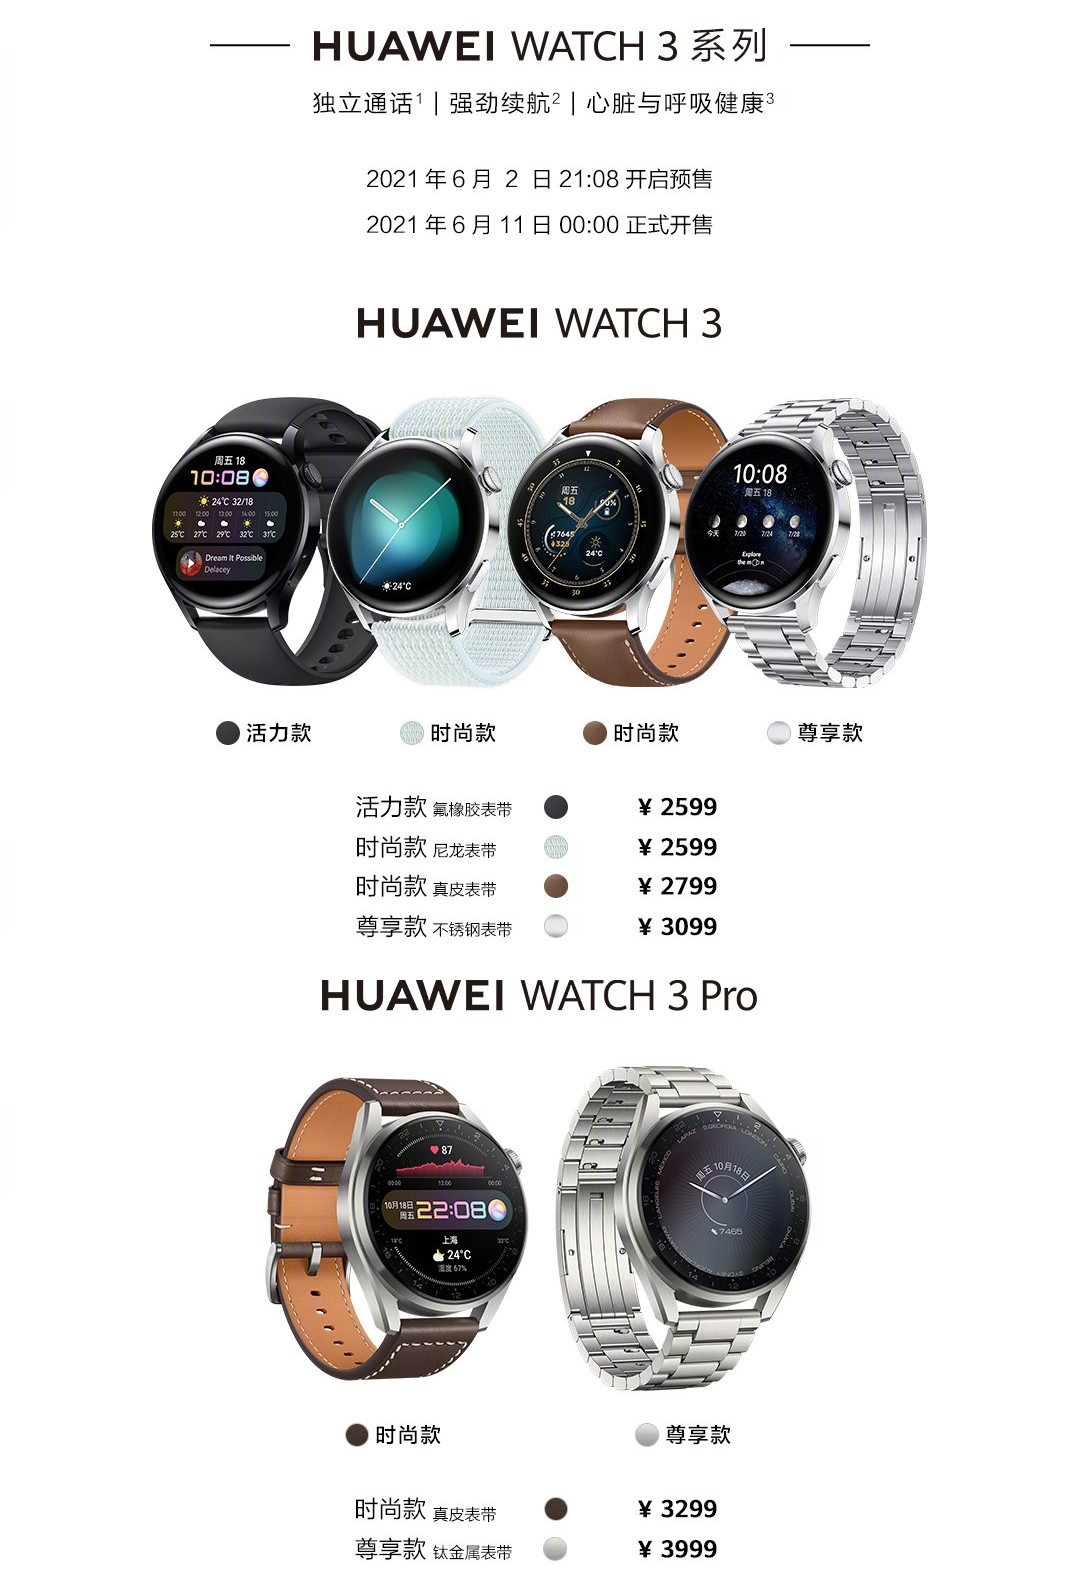 Huawei Watch 3 lançado com HarmonyOS, eSIM, bateria de 3 dias, 3 Pro segue com corpo de titânio